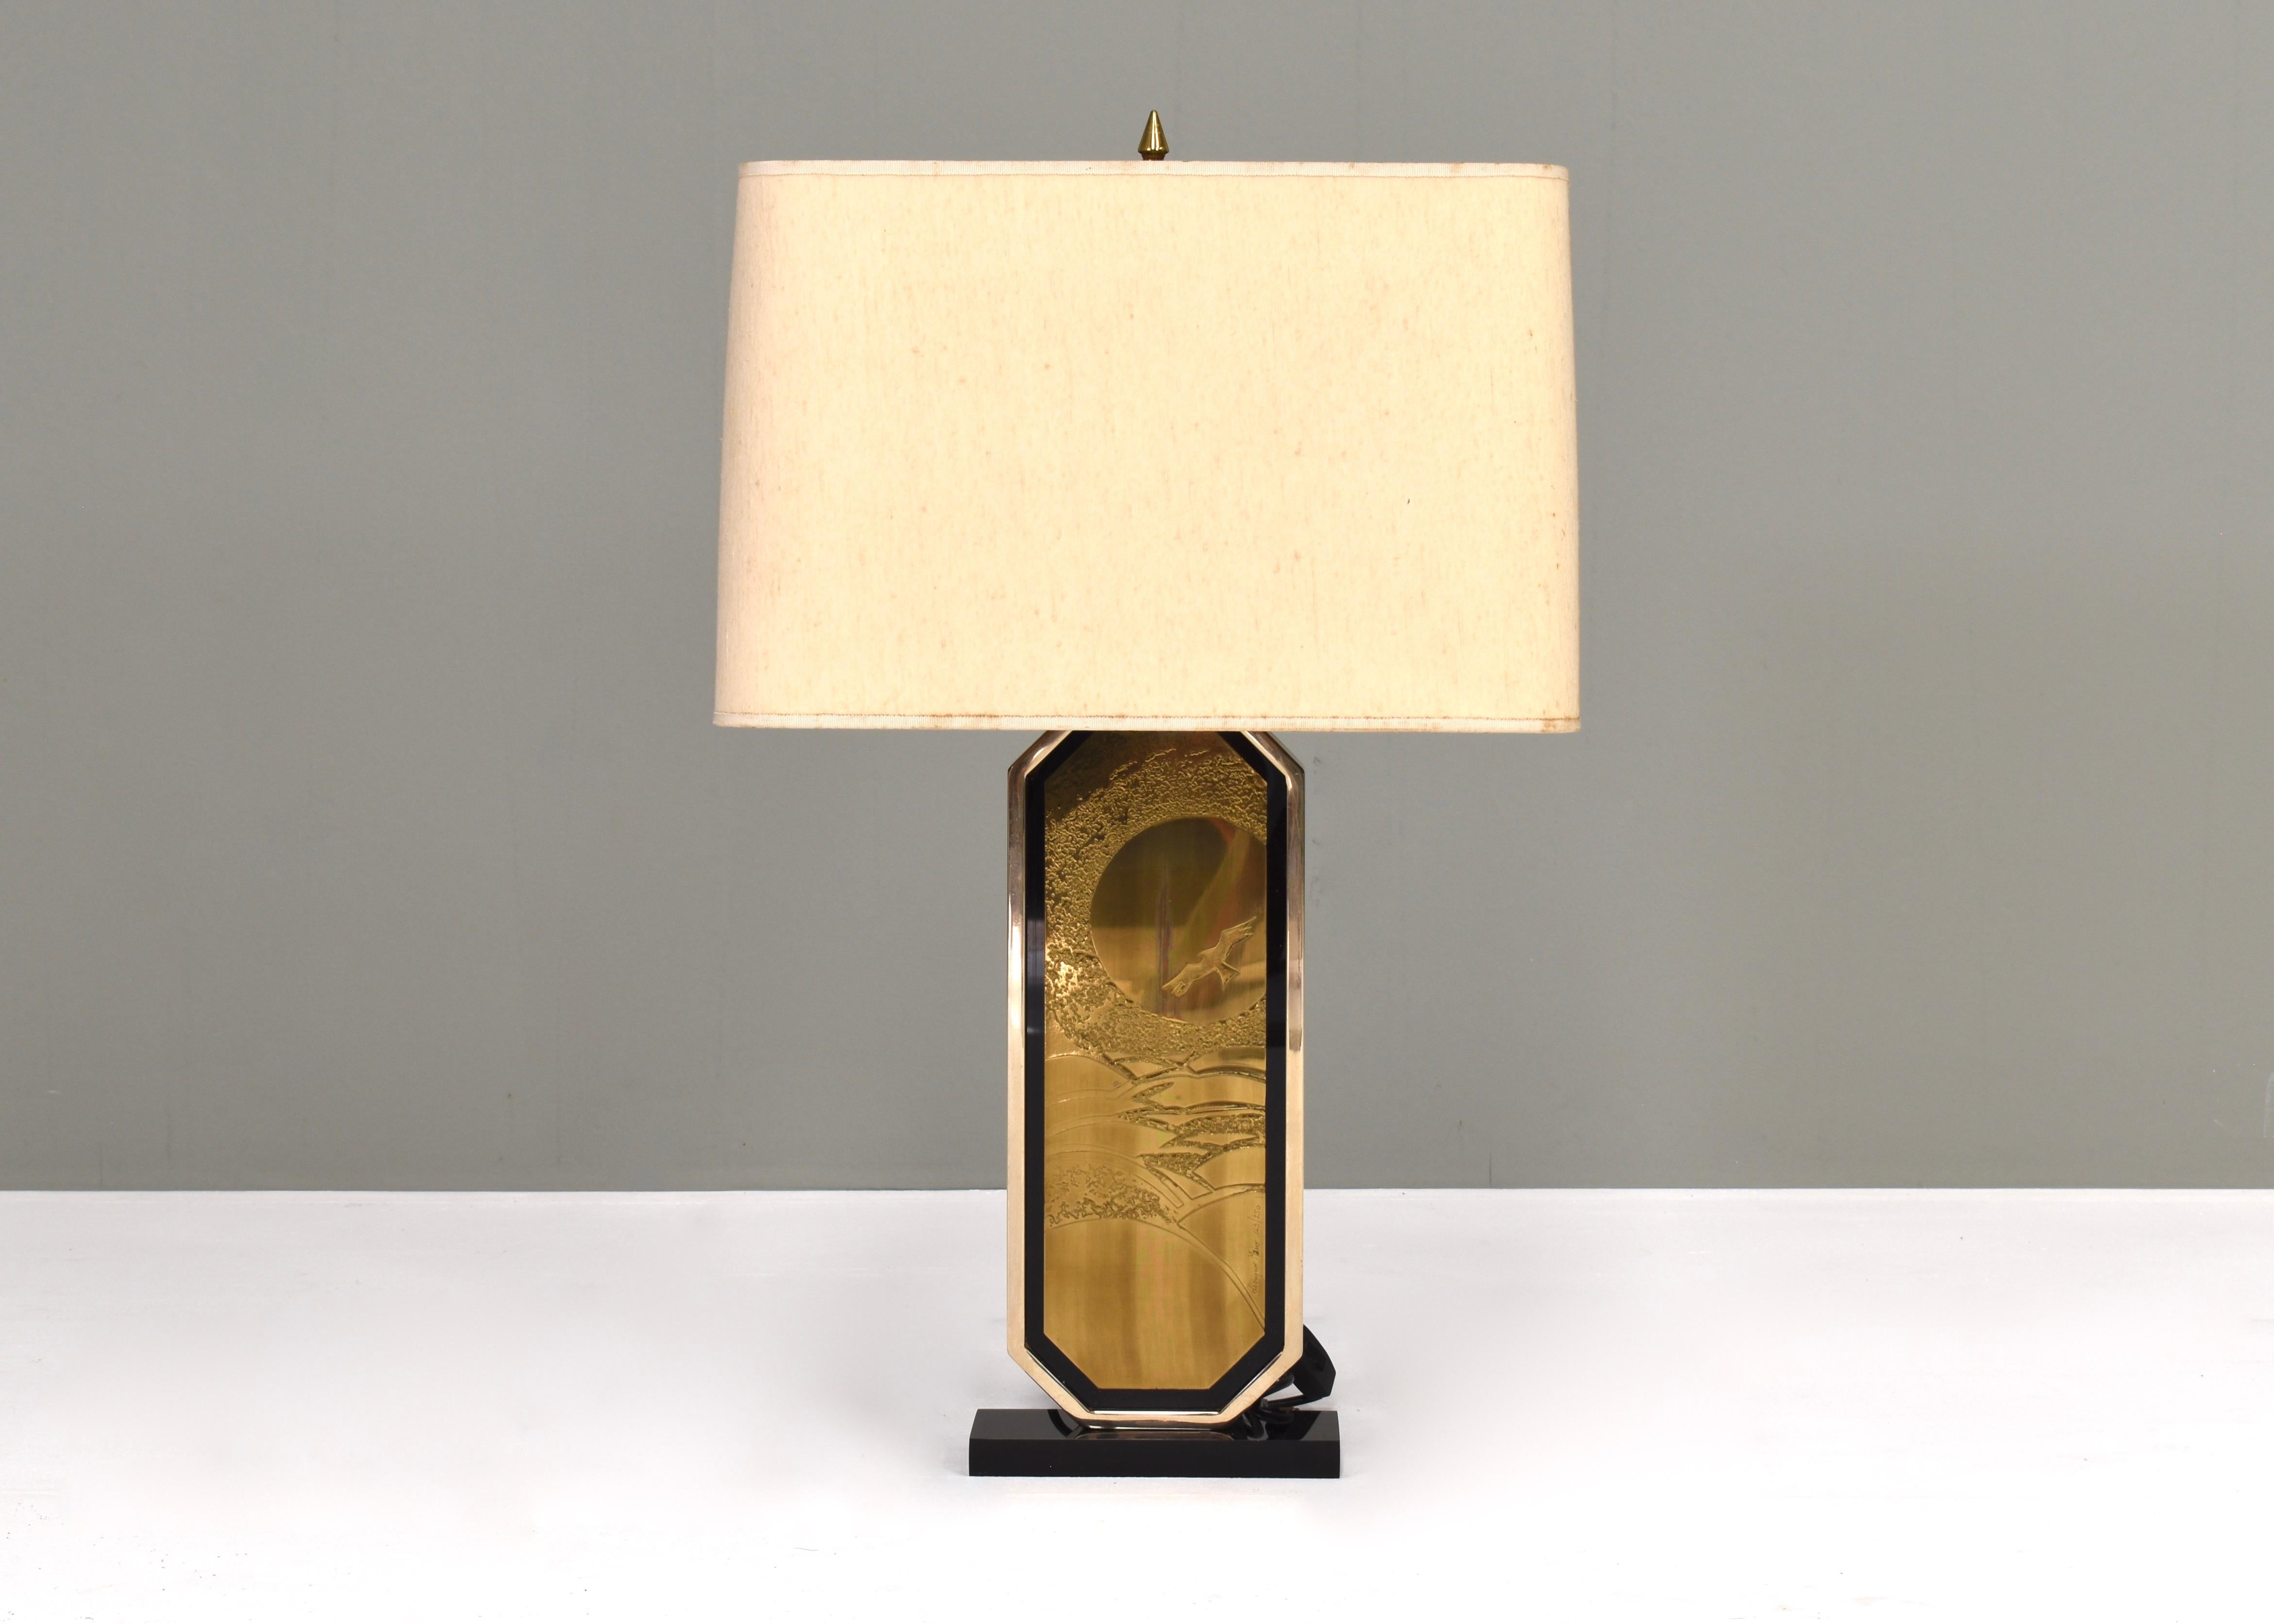 Lampe de table en laiton gravé de Georges Mathias pour Designo Maho - Belgique, vers 1970. Cette lampe est une édition limitée nr 163 de 250 fabriqués.

La lampe est signée : Designo Maho 163\250

Concepteur : Georges Mathias
Fabricant : Maho.